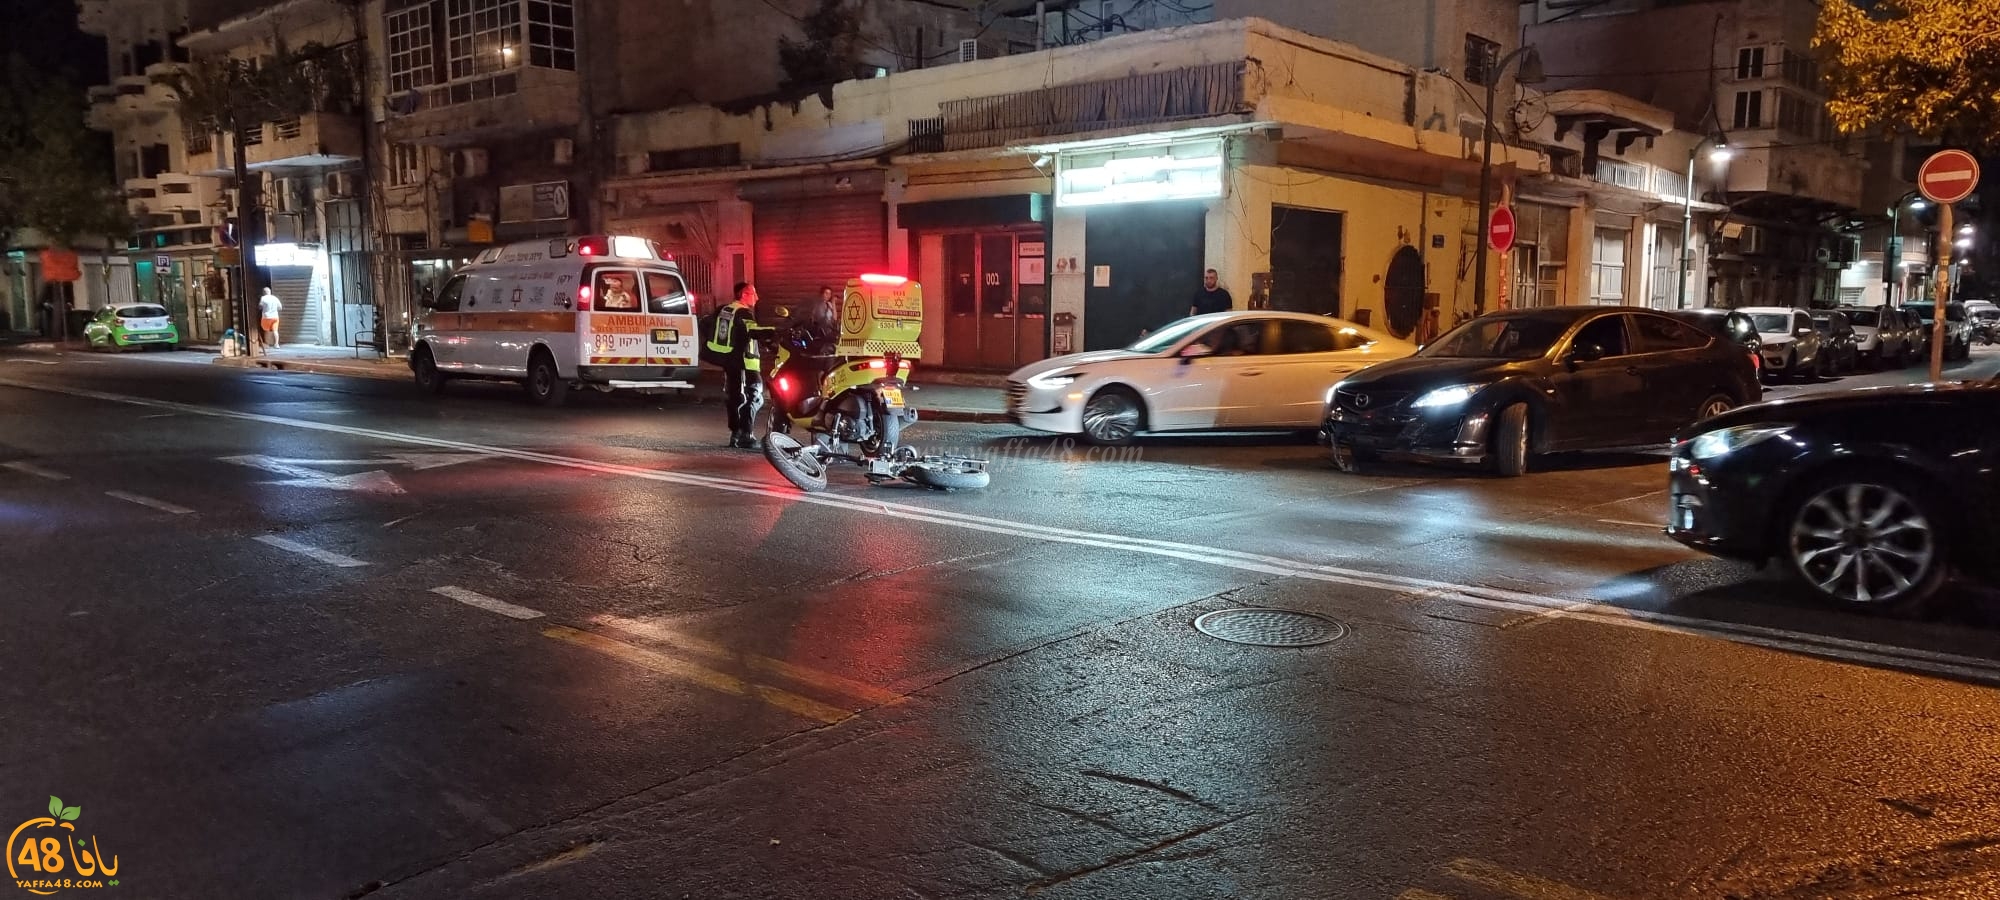 يافا: اصابة طفيفة لراكب دراجة كهربائية بحادث دهس 